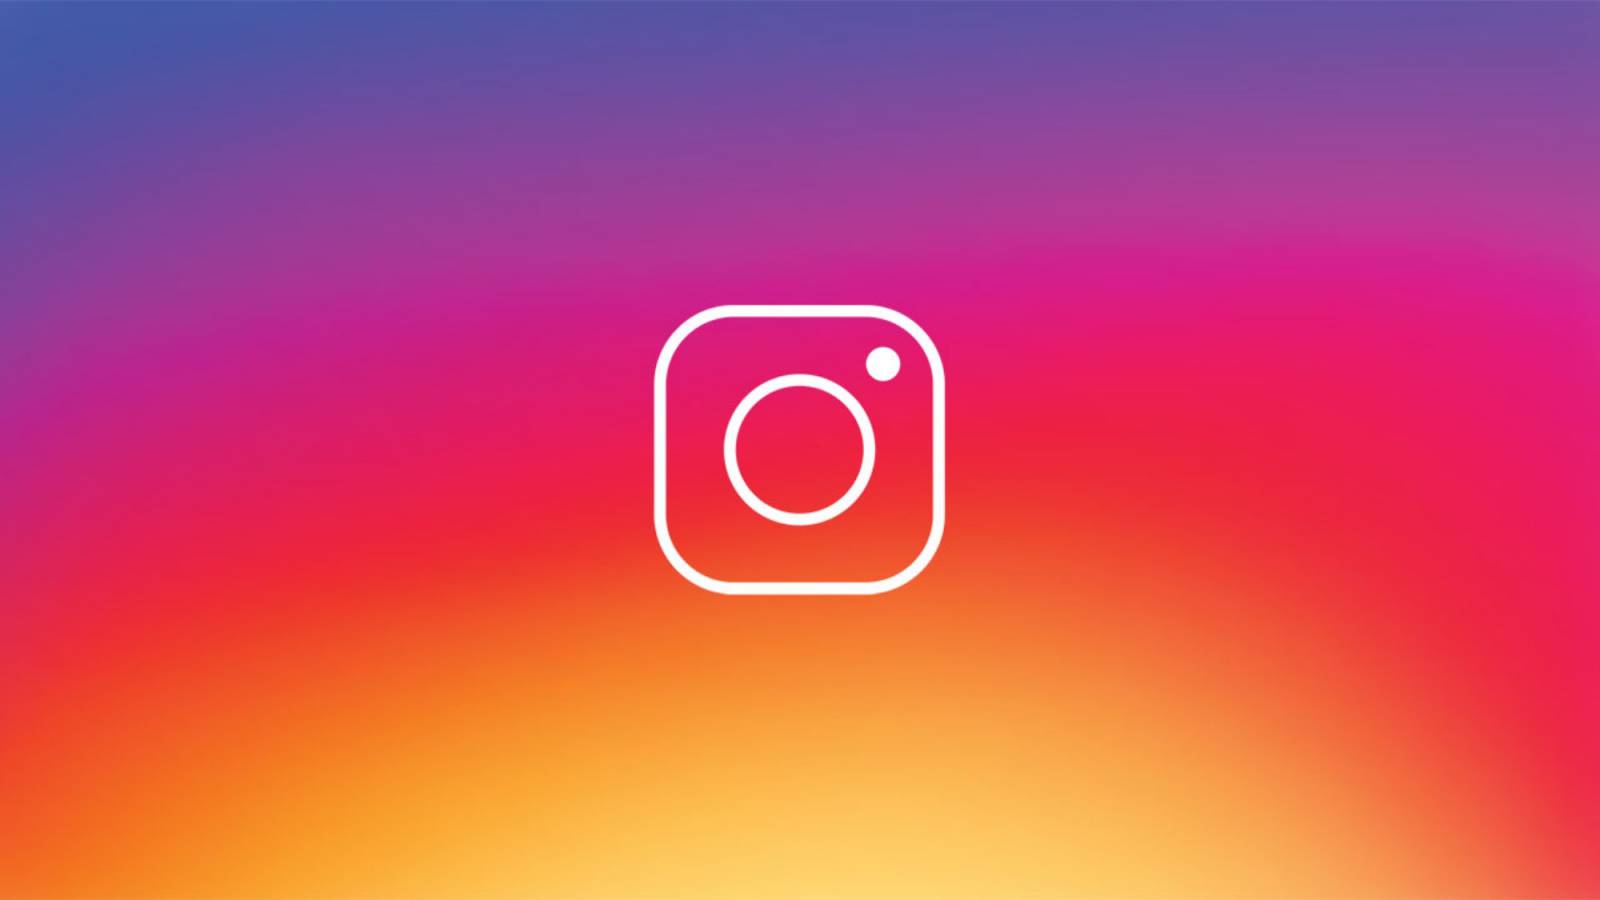 Instagram Actualizarea Noua Lansata pentru Telefoane Astazi